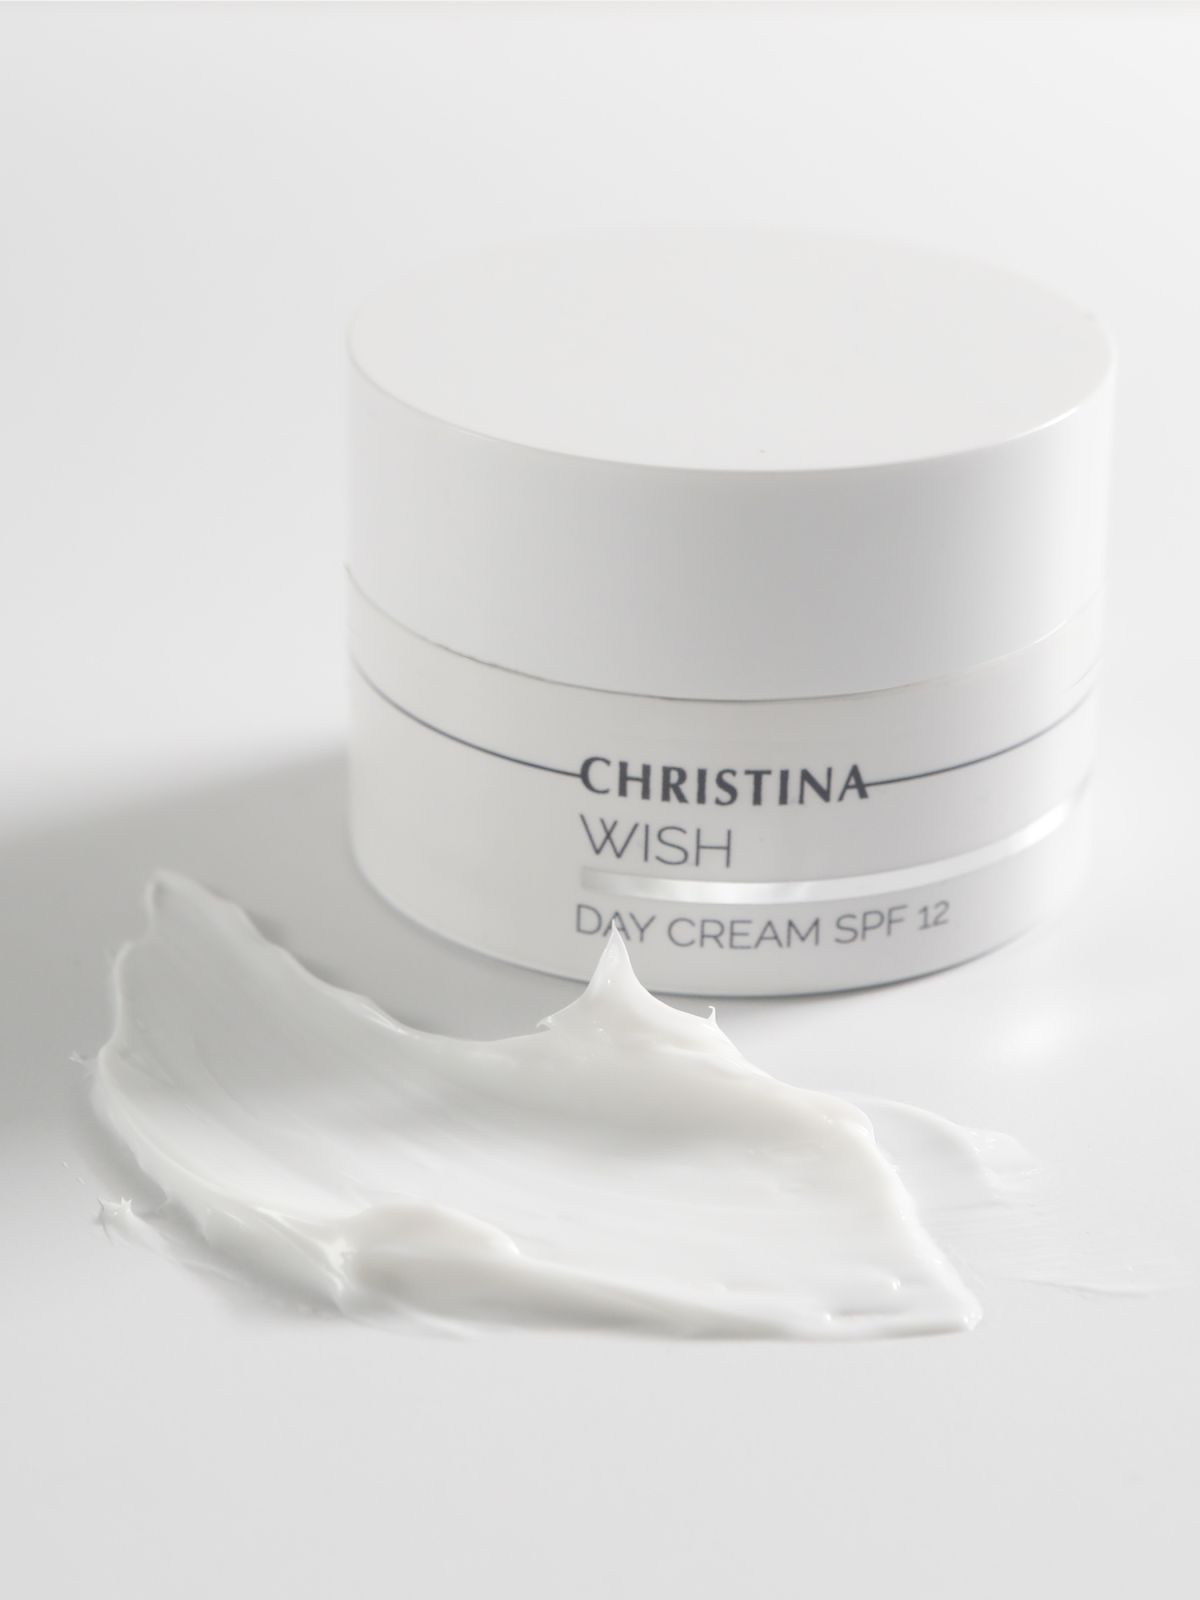  קרם יום לעור בוגר Wish Day Cream SPF-12 של CHRISTINA